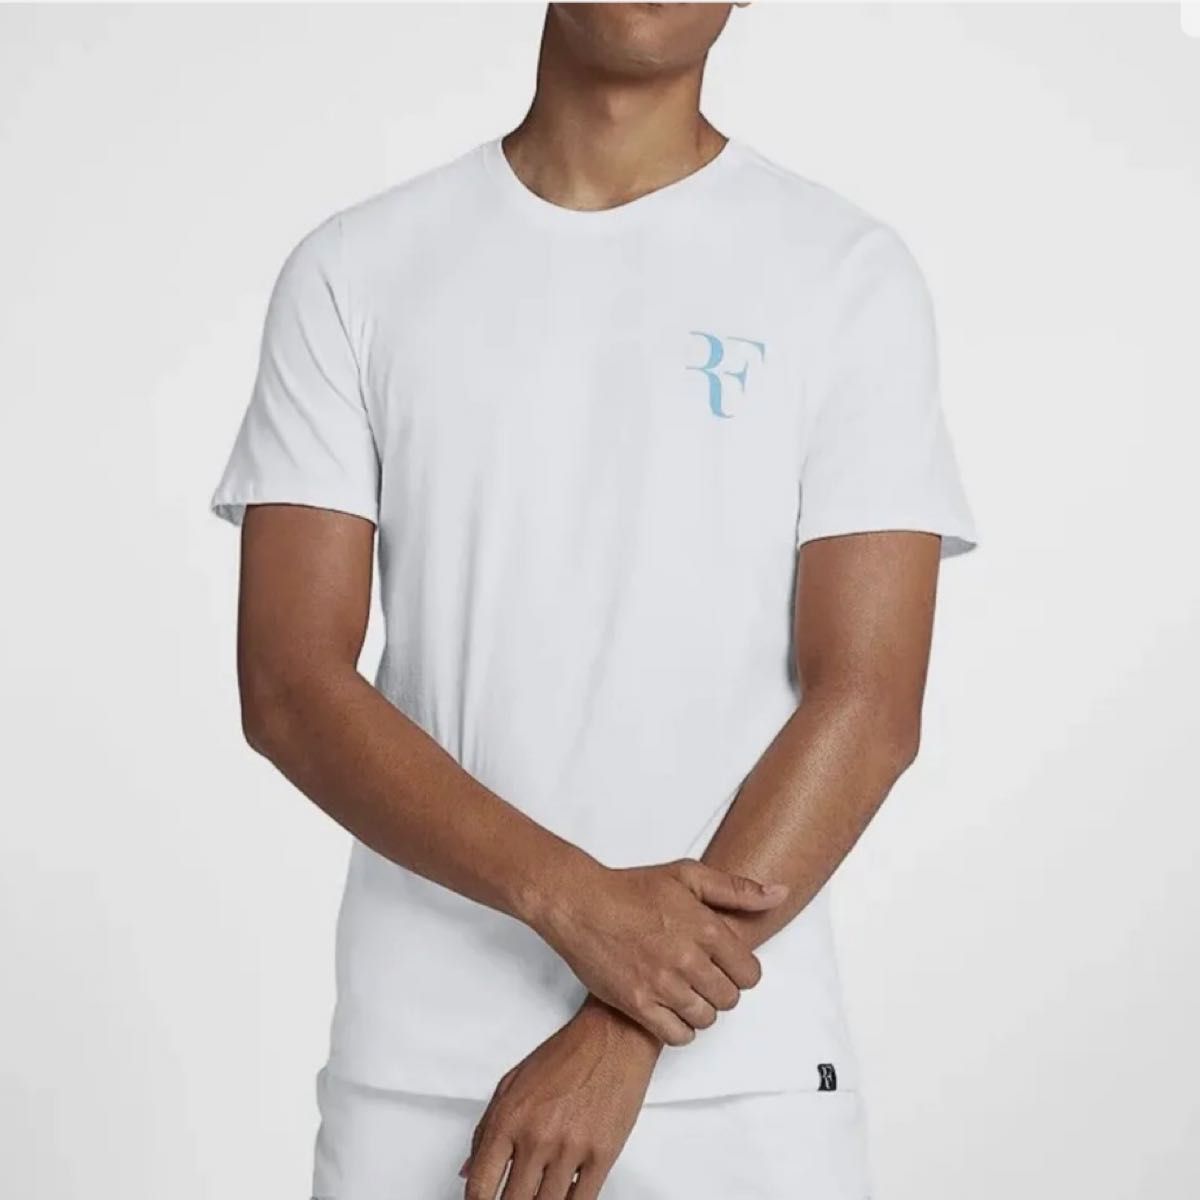 NIKE ナイキ Roger Federer RF 2018 Tシャツ